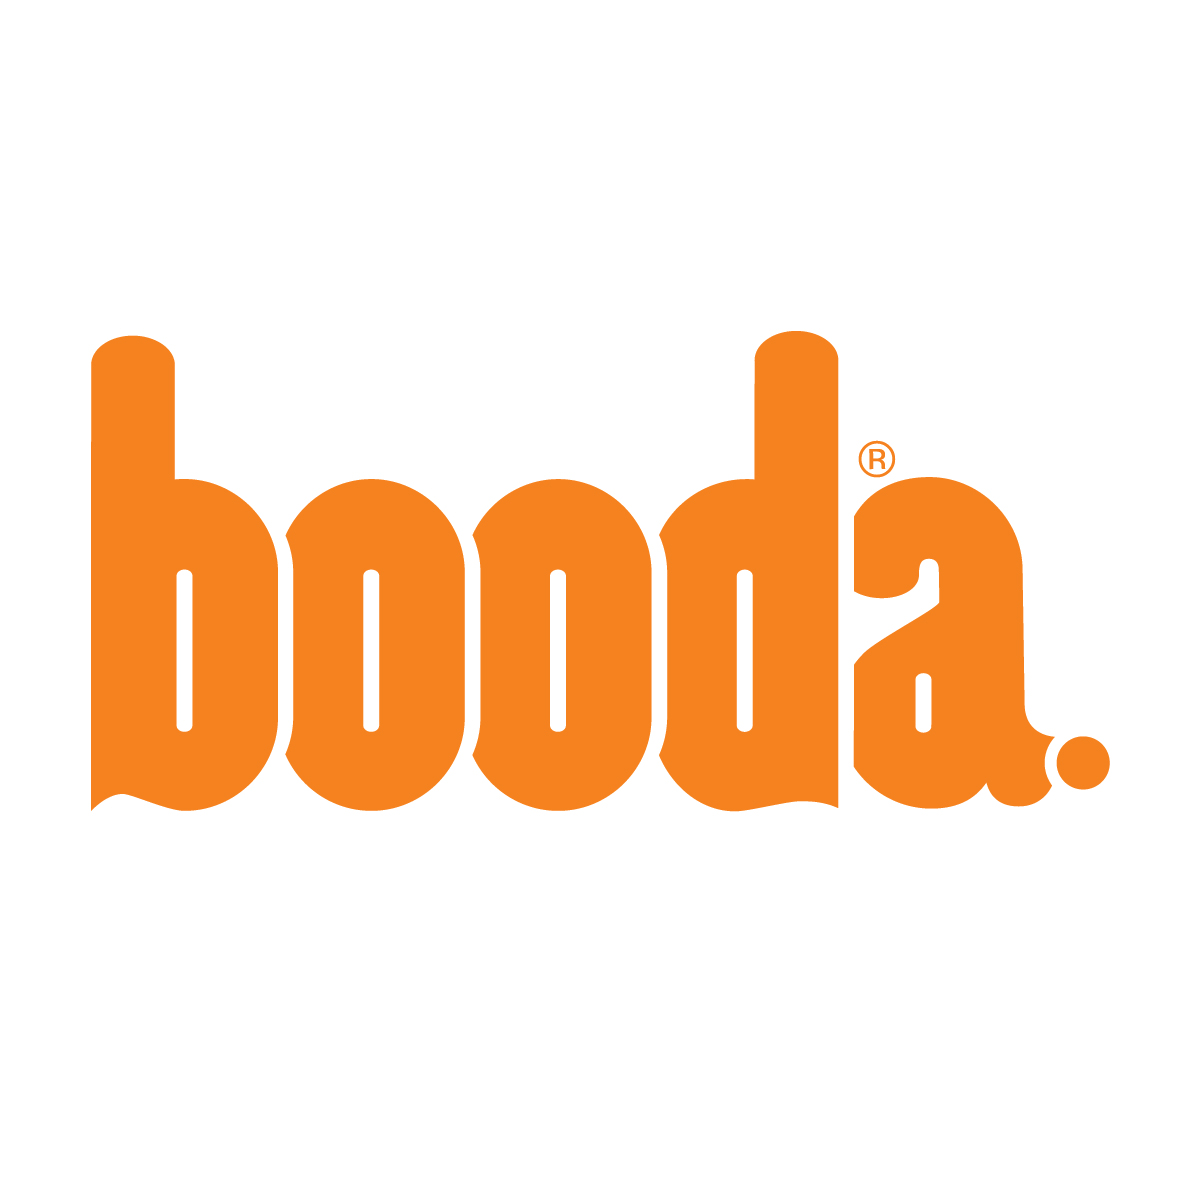 Booda